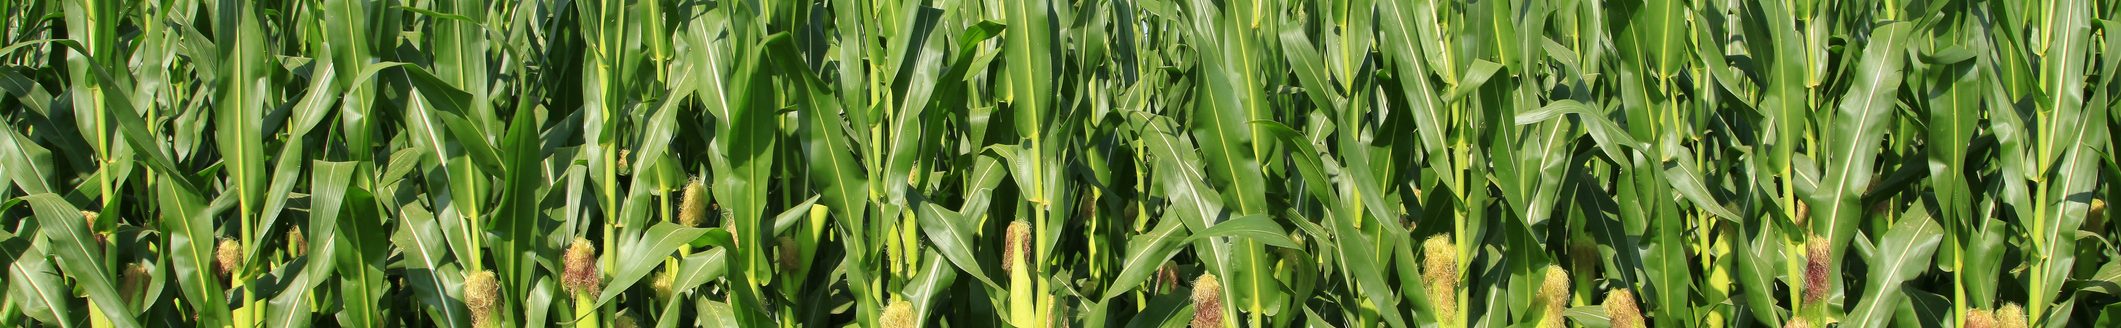 corn field (Photo: iStock - zhengzaishuru)